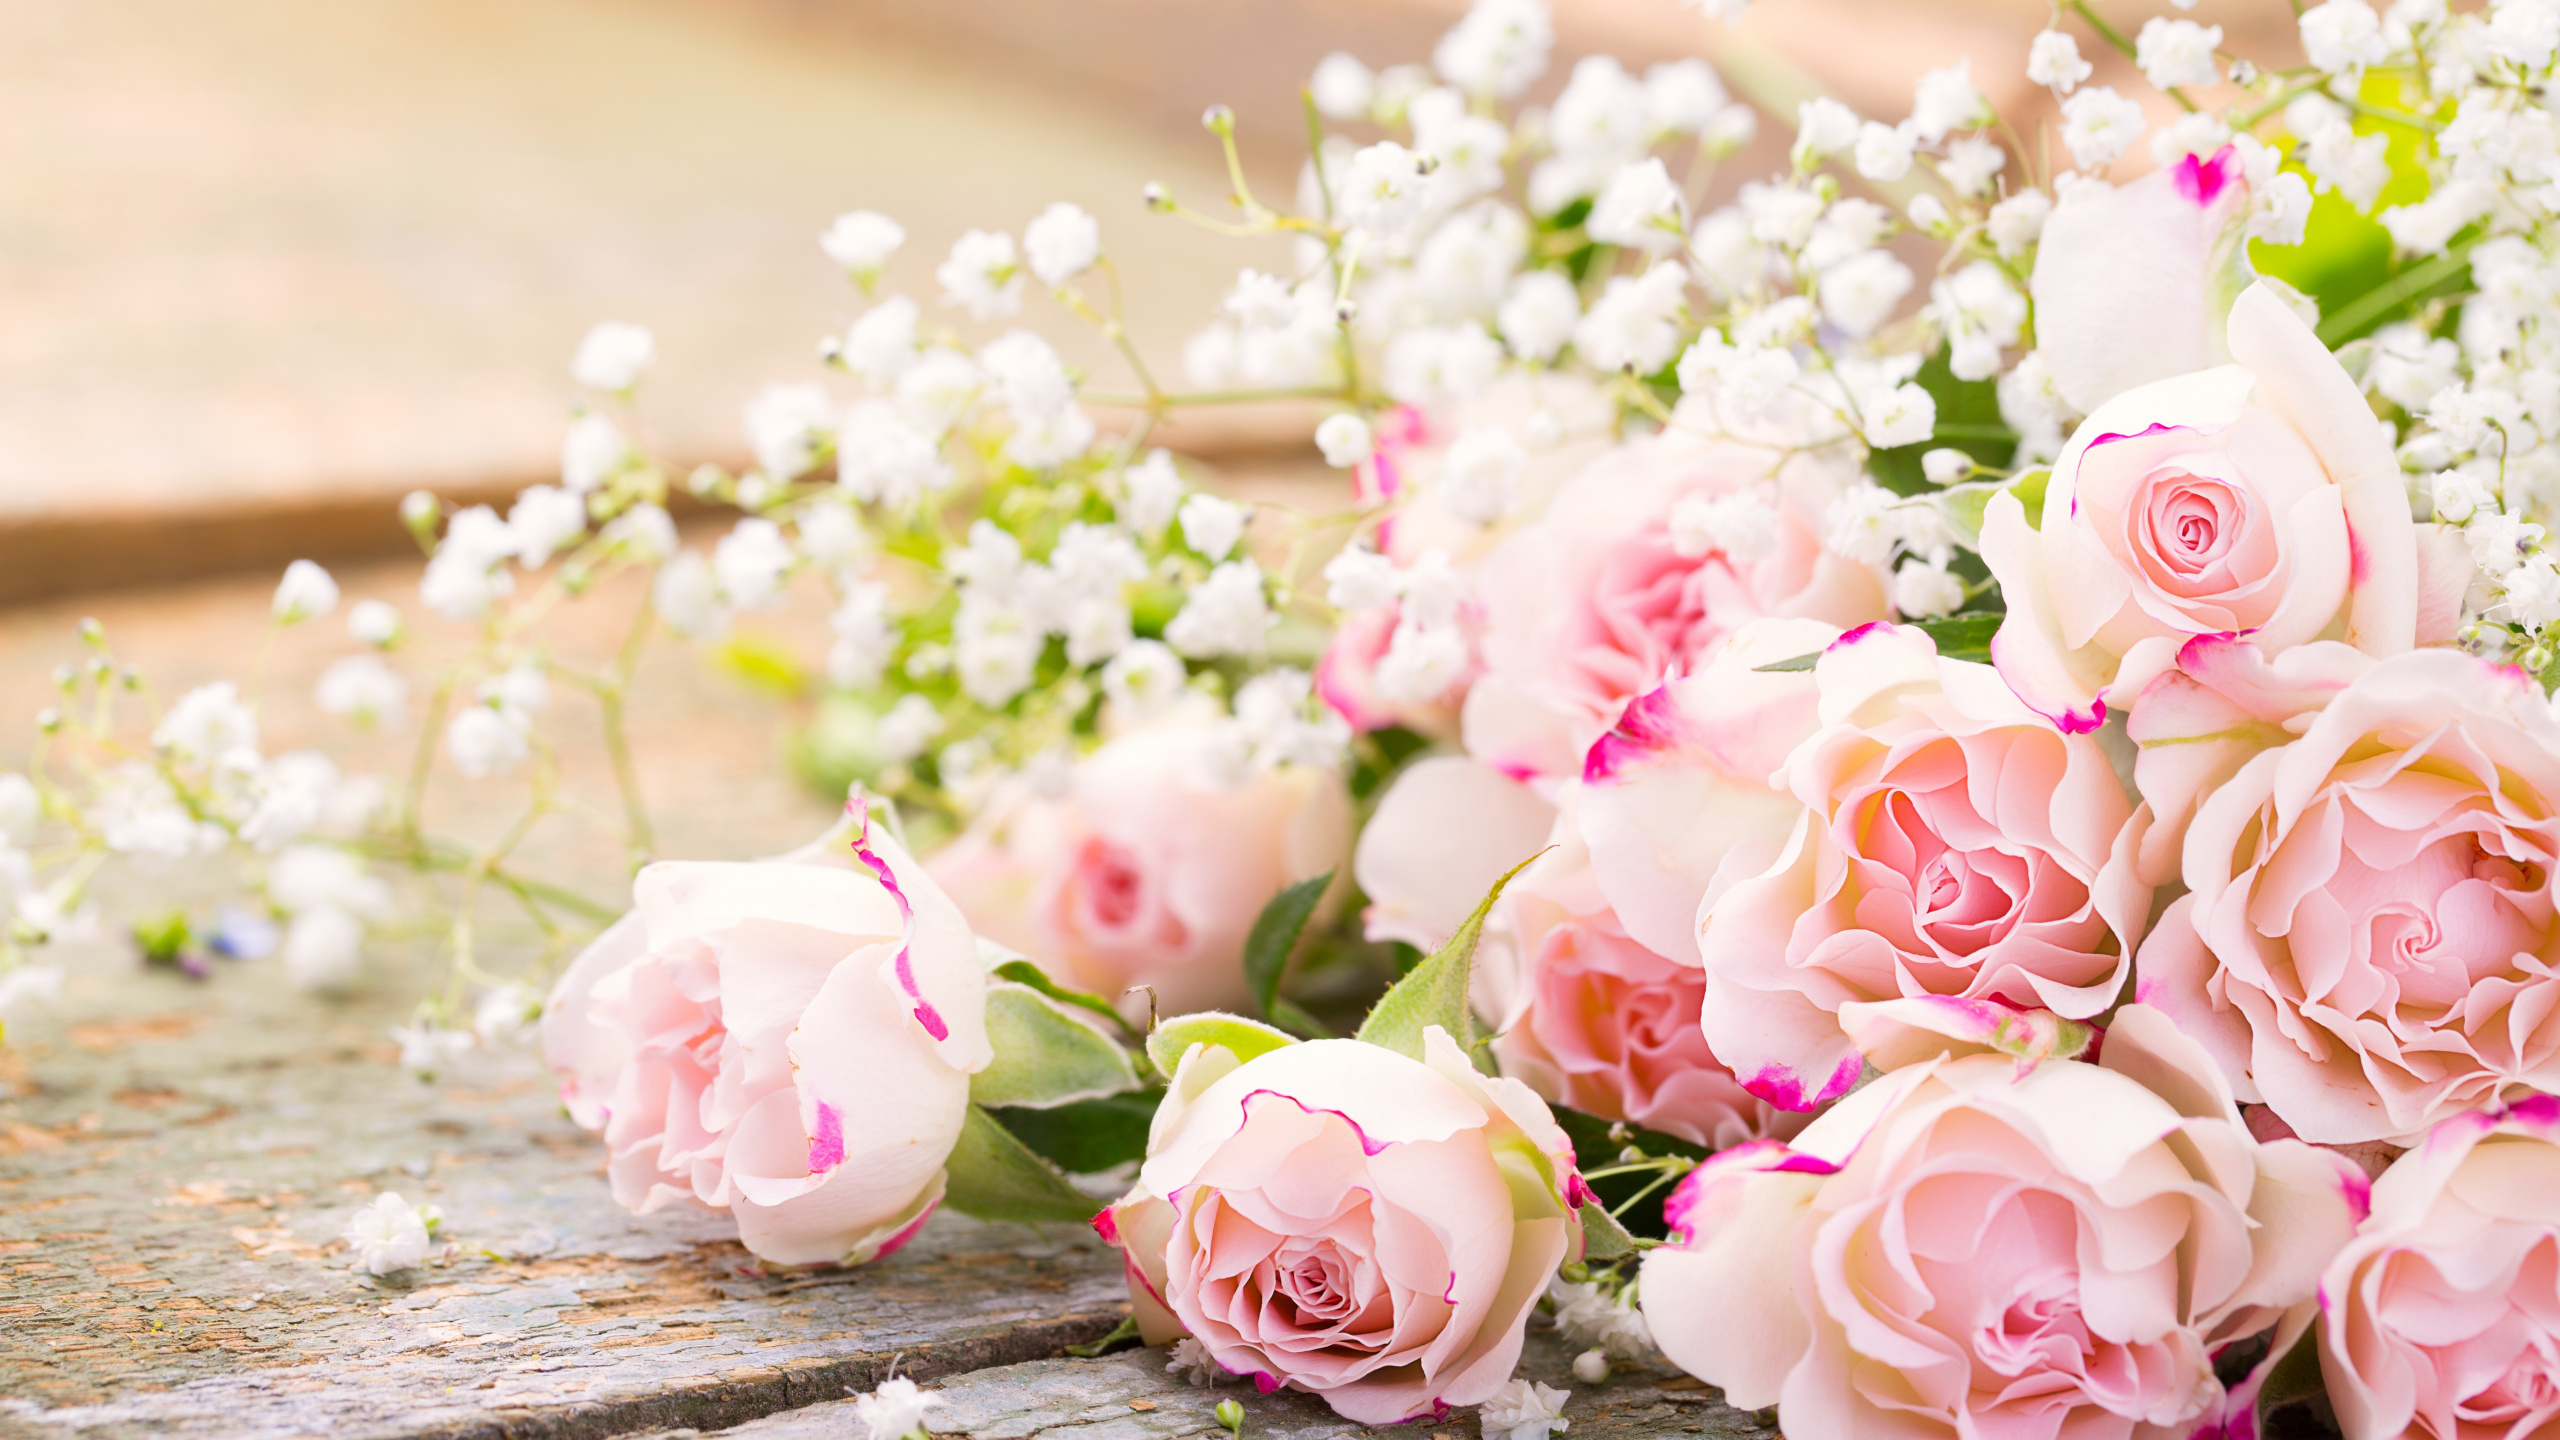 玫瑰花园, 粉红色, 花安排, 花卉设计, 切花 壁纸 2560x1440 允许